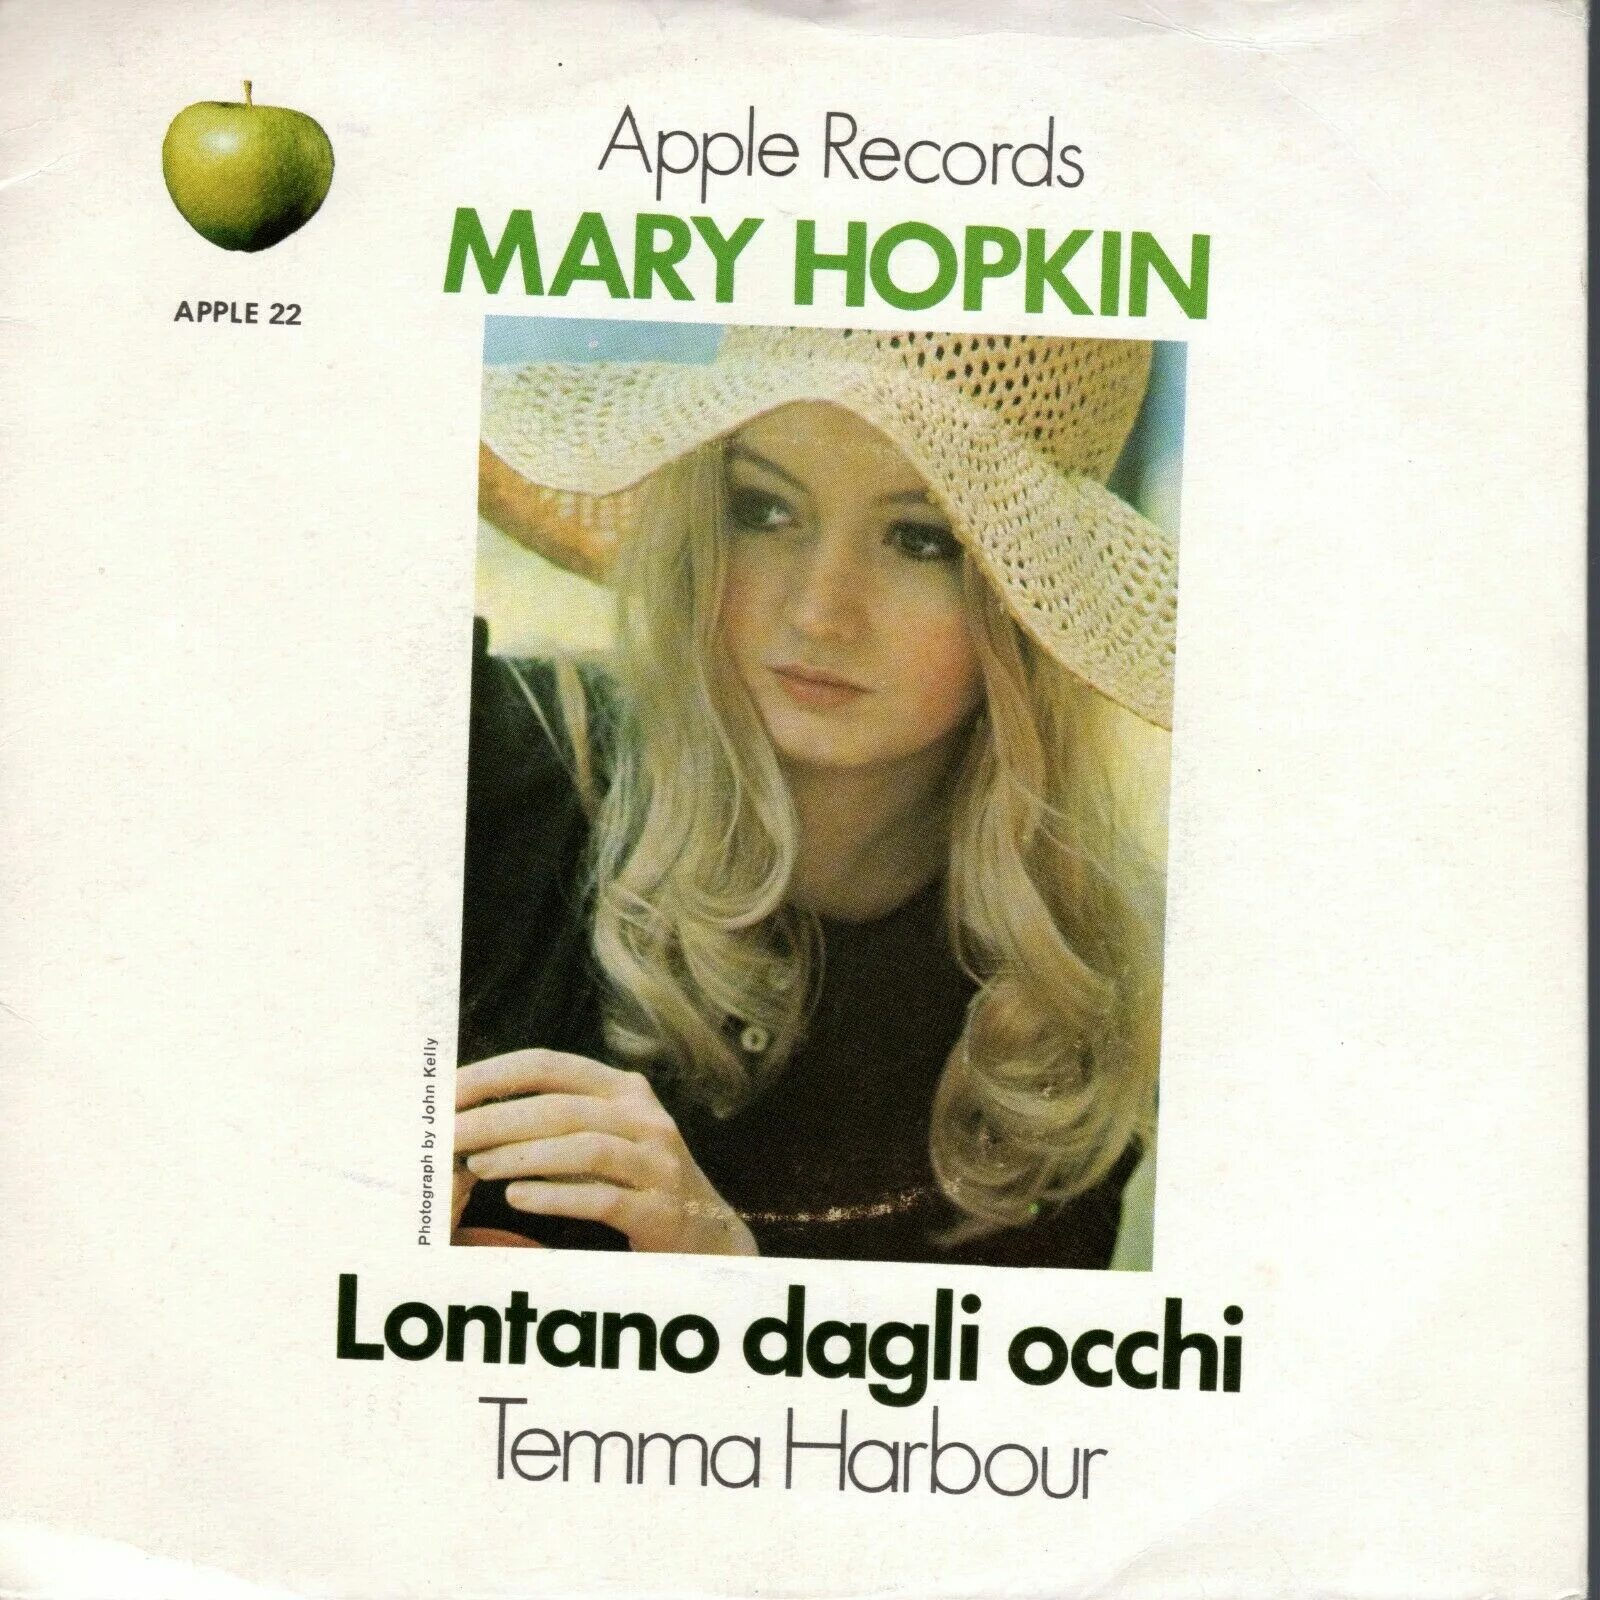 Mary apple. Mary Hopkin. Mary Hopkin фото. Mary Hopkin temma Harbour.